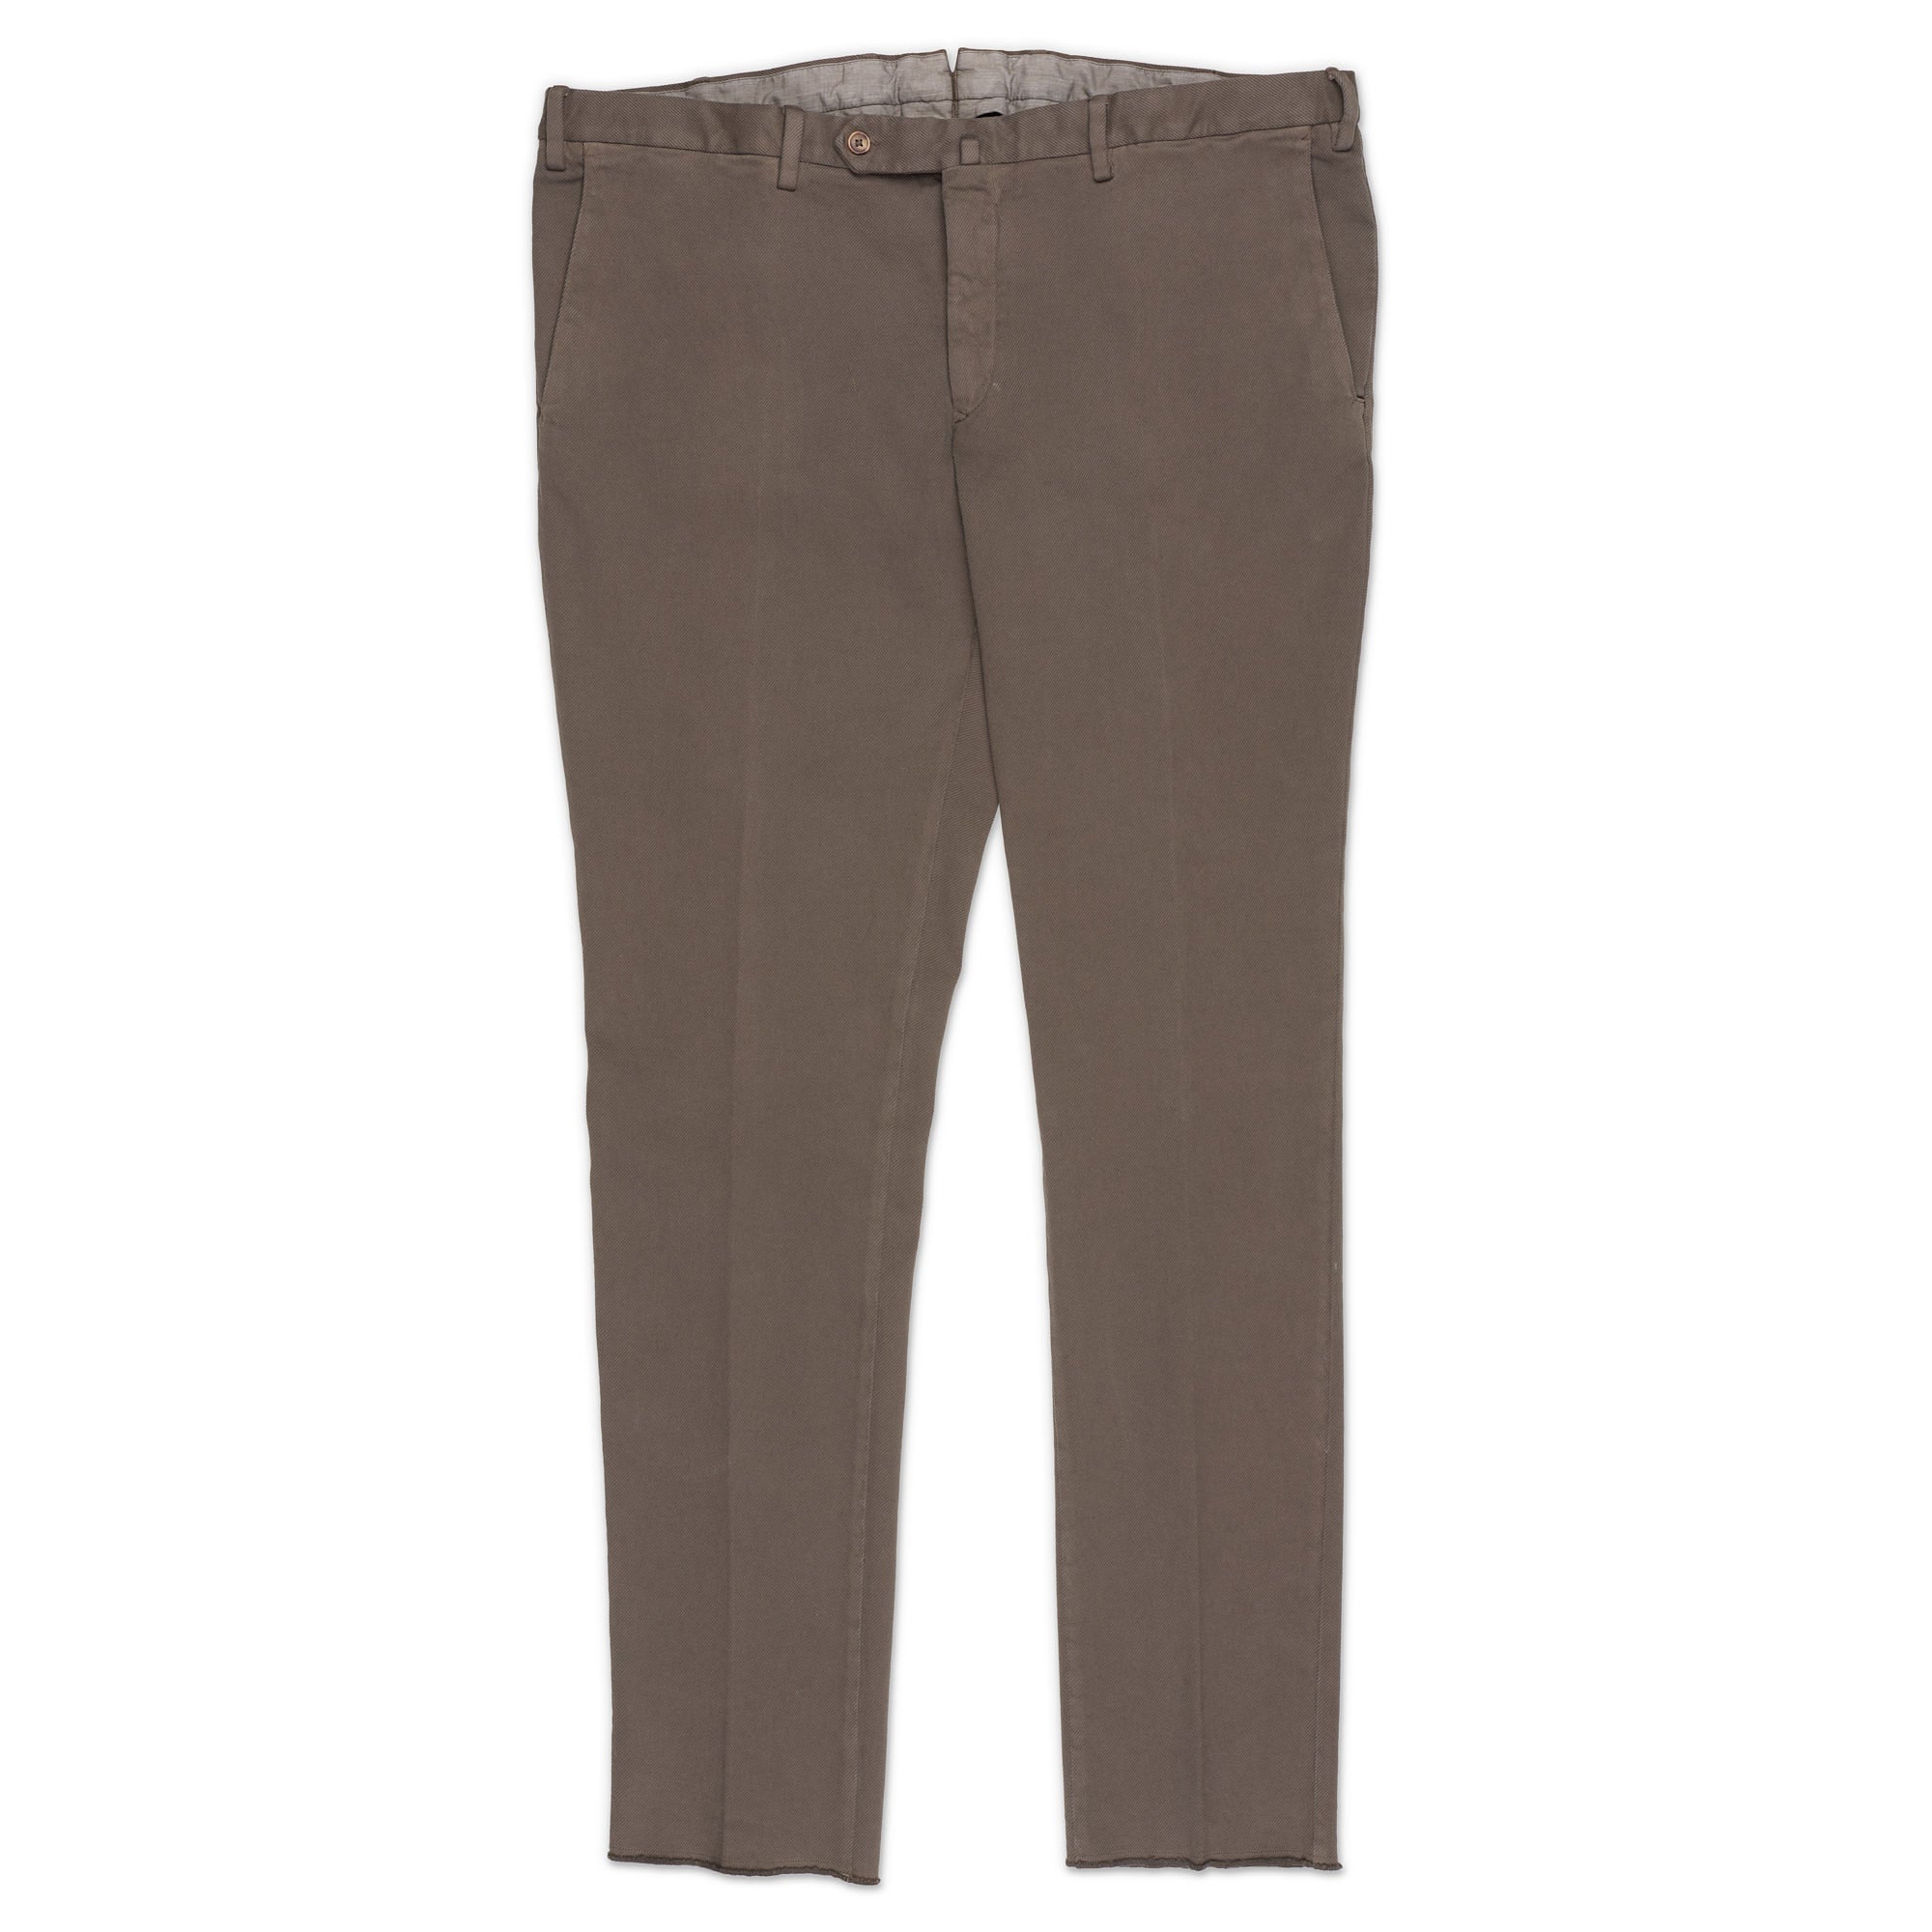 INCOTEX (Slowear) Gray Twill Cotton Flat Front Pants EU 60 NEW US 44 Slim Fit INCOTEX